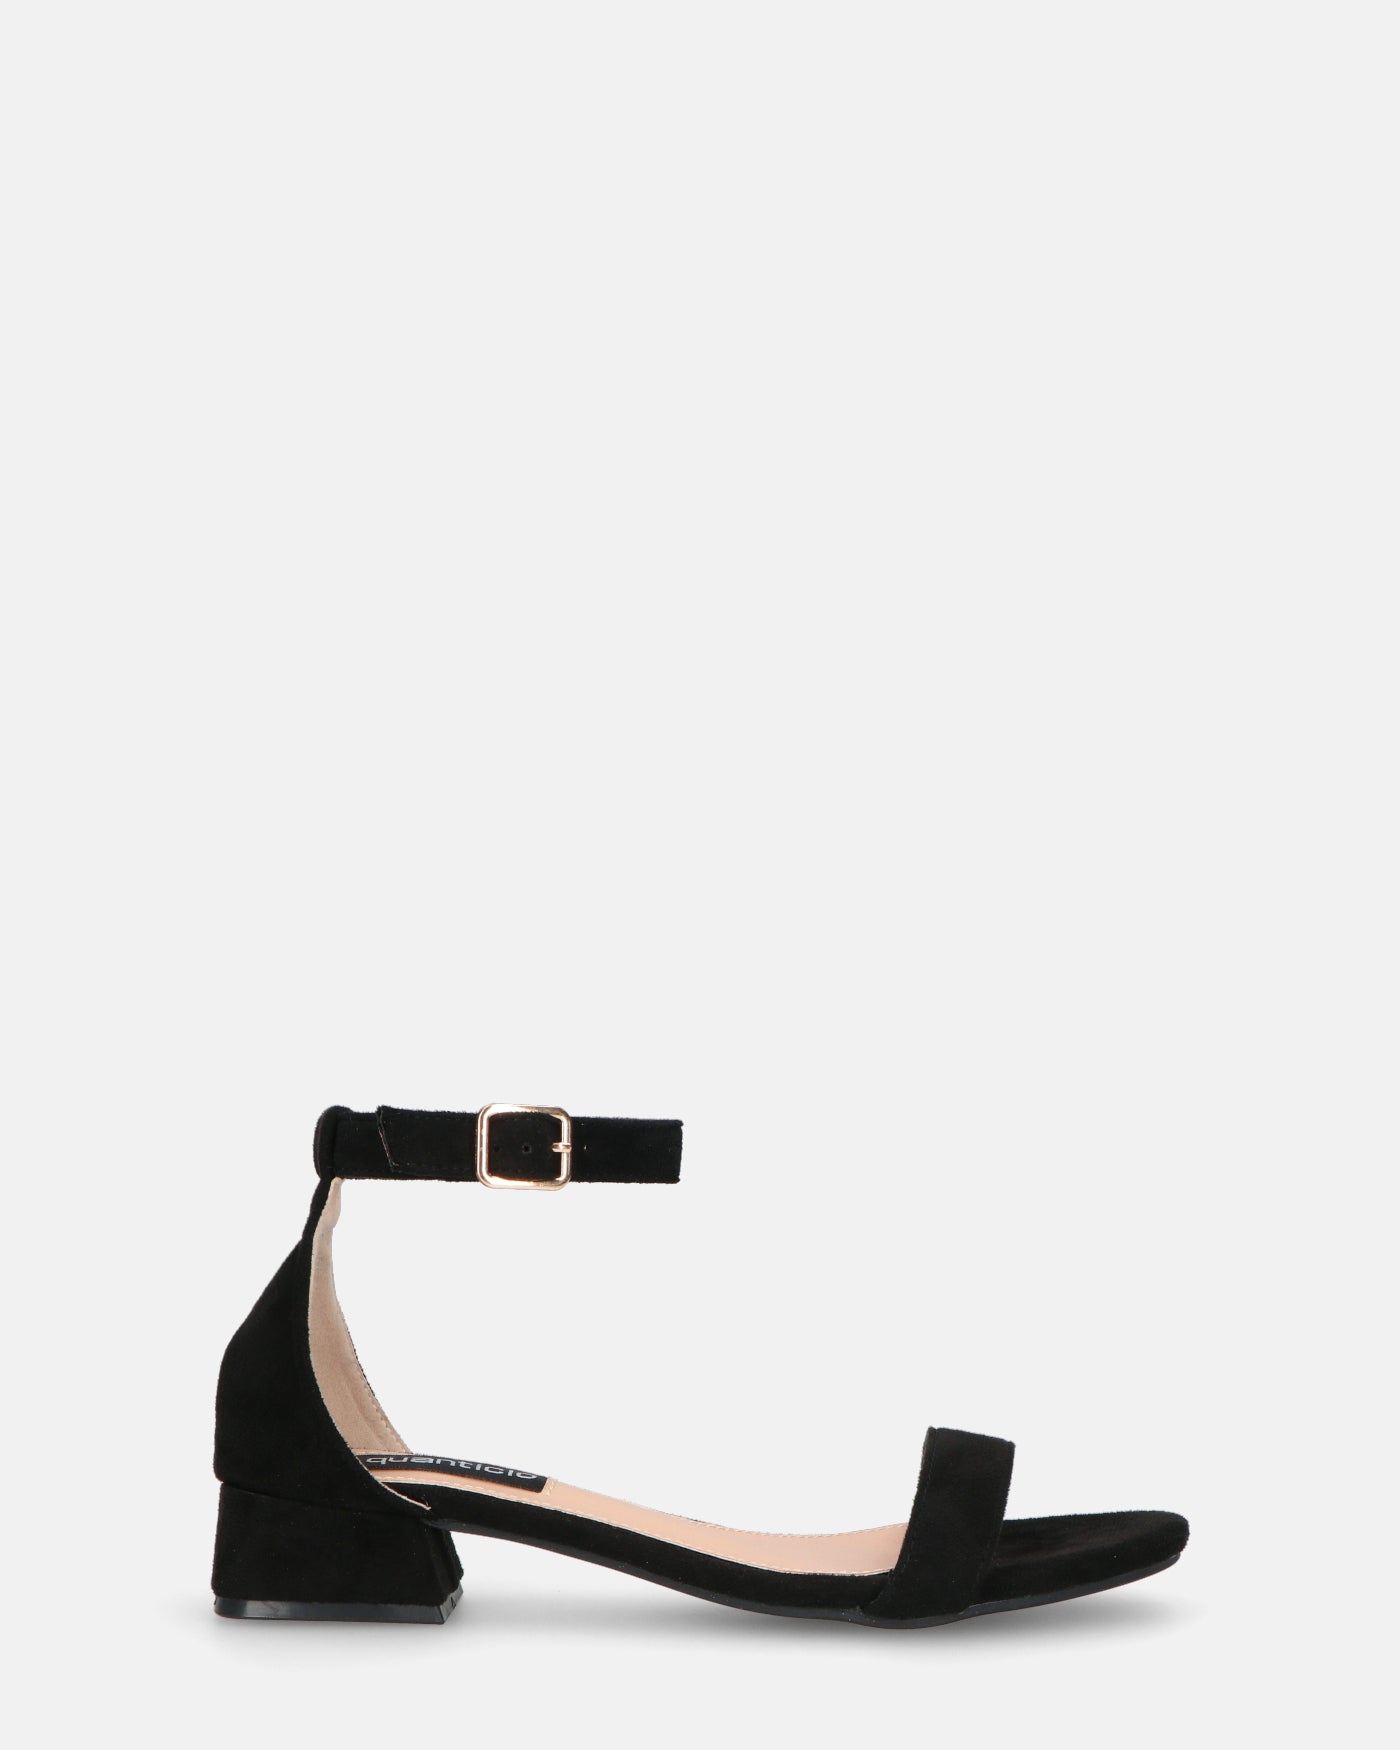 WANDA - sandali con tacco basso in camoscio nero